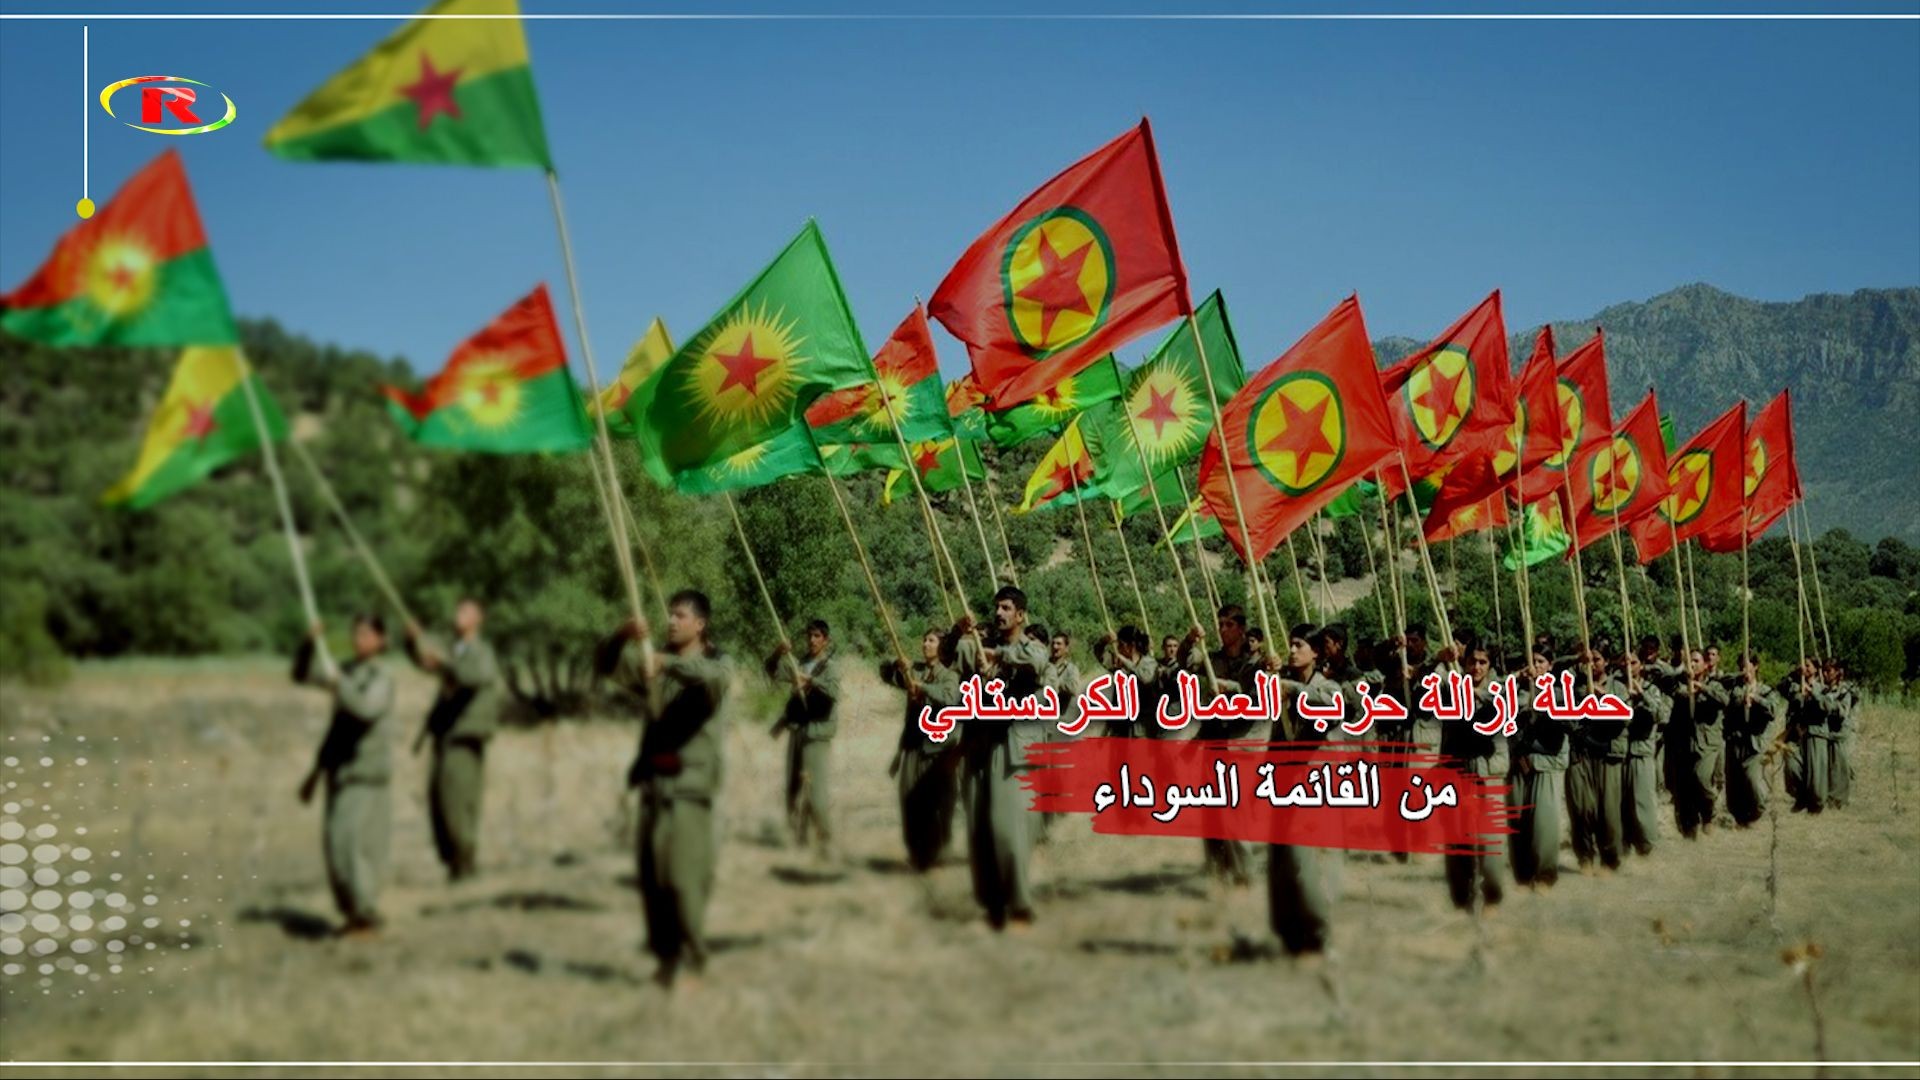 أحمد الجميلي: حزب العمال الكردستاني هو الحزب الوحيد الذي يناضل من أجل حرية الشعوب في كل مكان